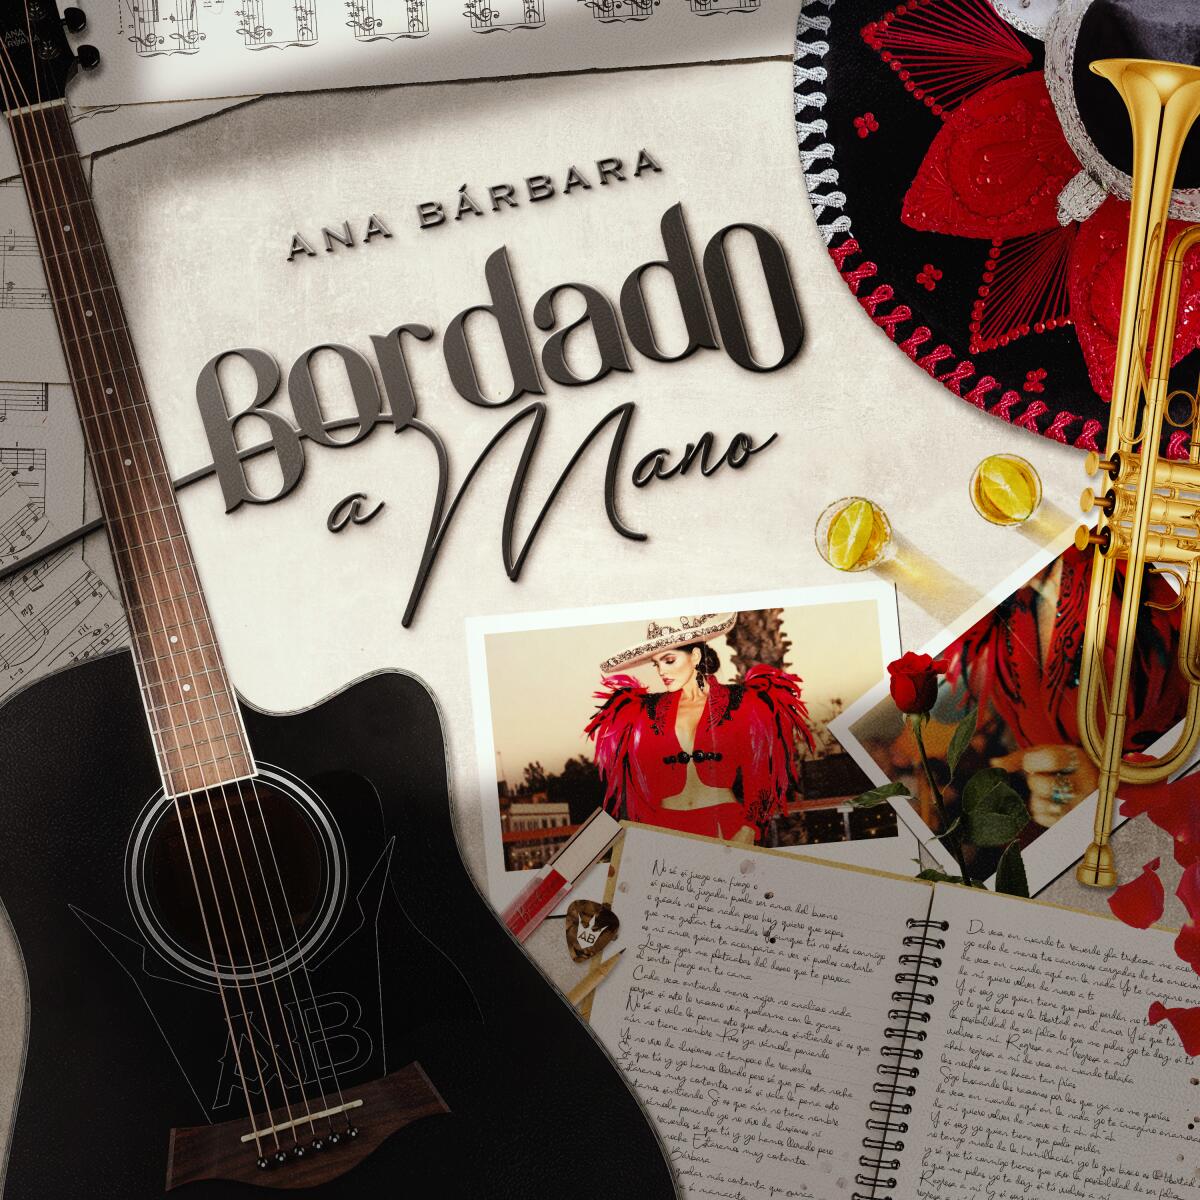 Ana Bárbara complite en el Latin Grammy por su trabajo "Bordado a mano", un álbum que se tomó casi 10 años en completar.